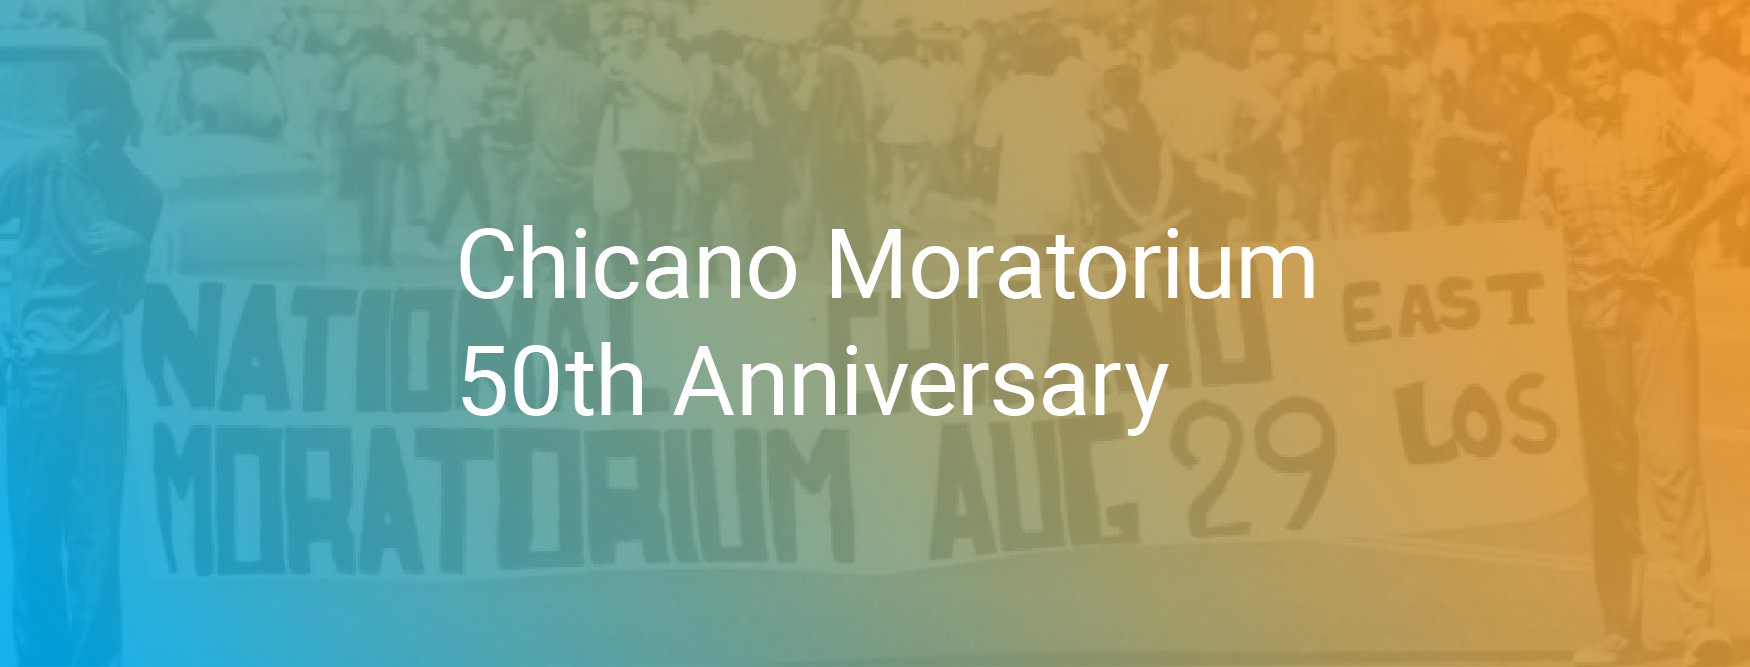 Chicano Moratorium 50th Anniversary 